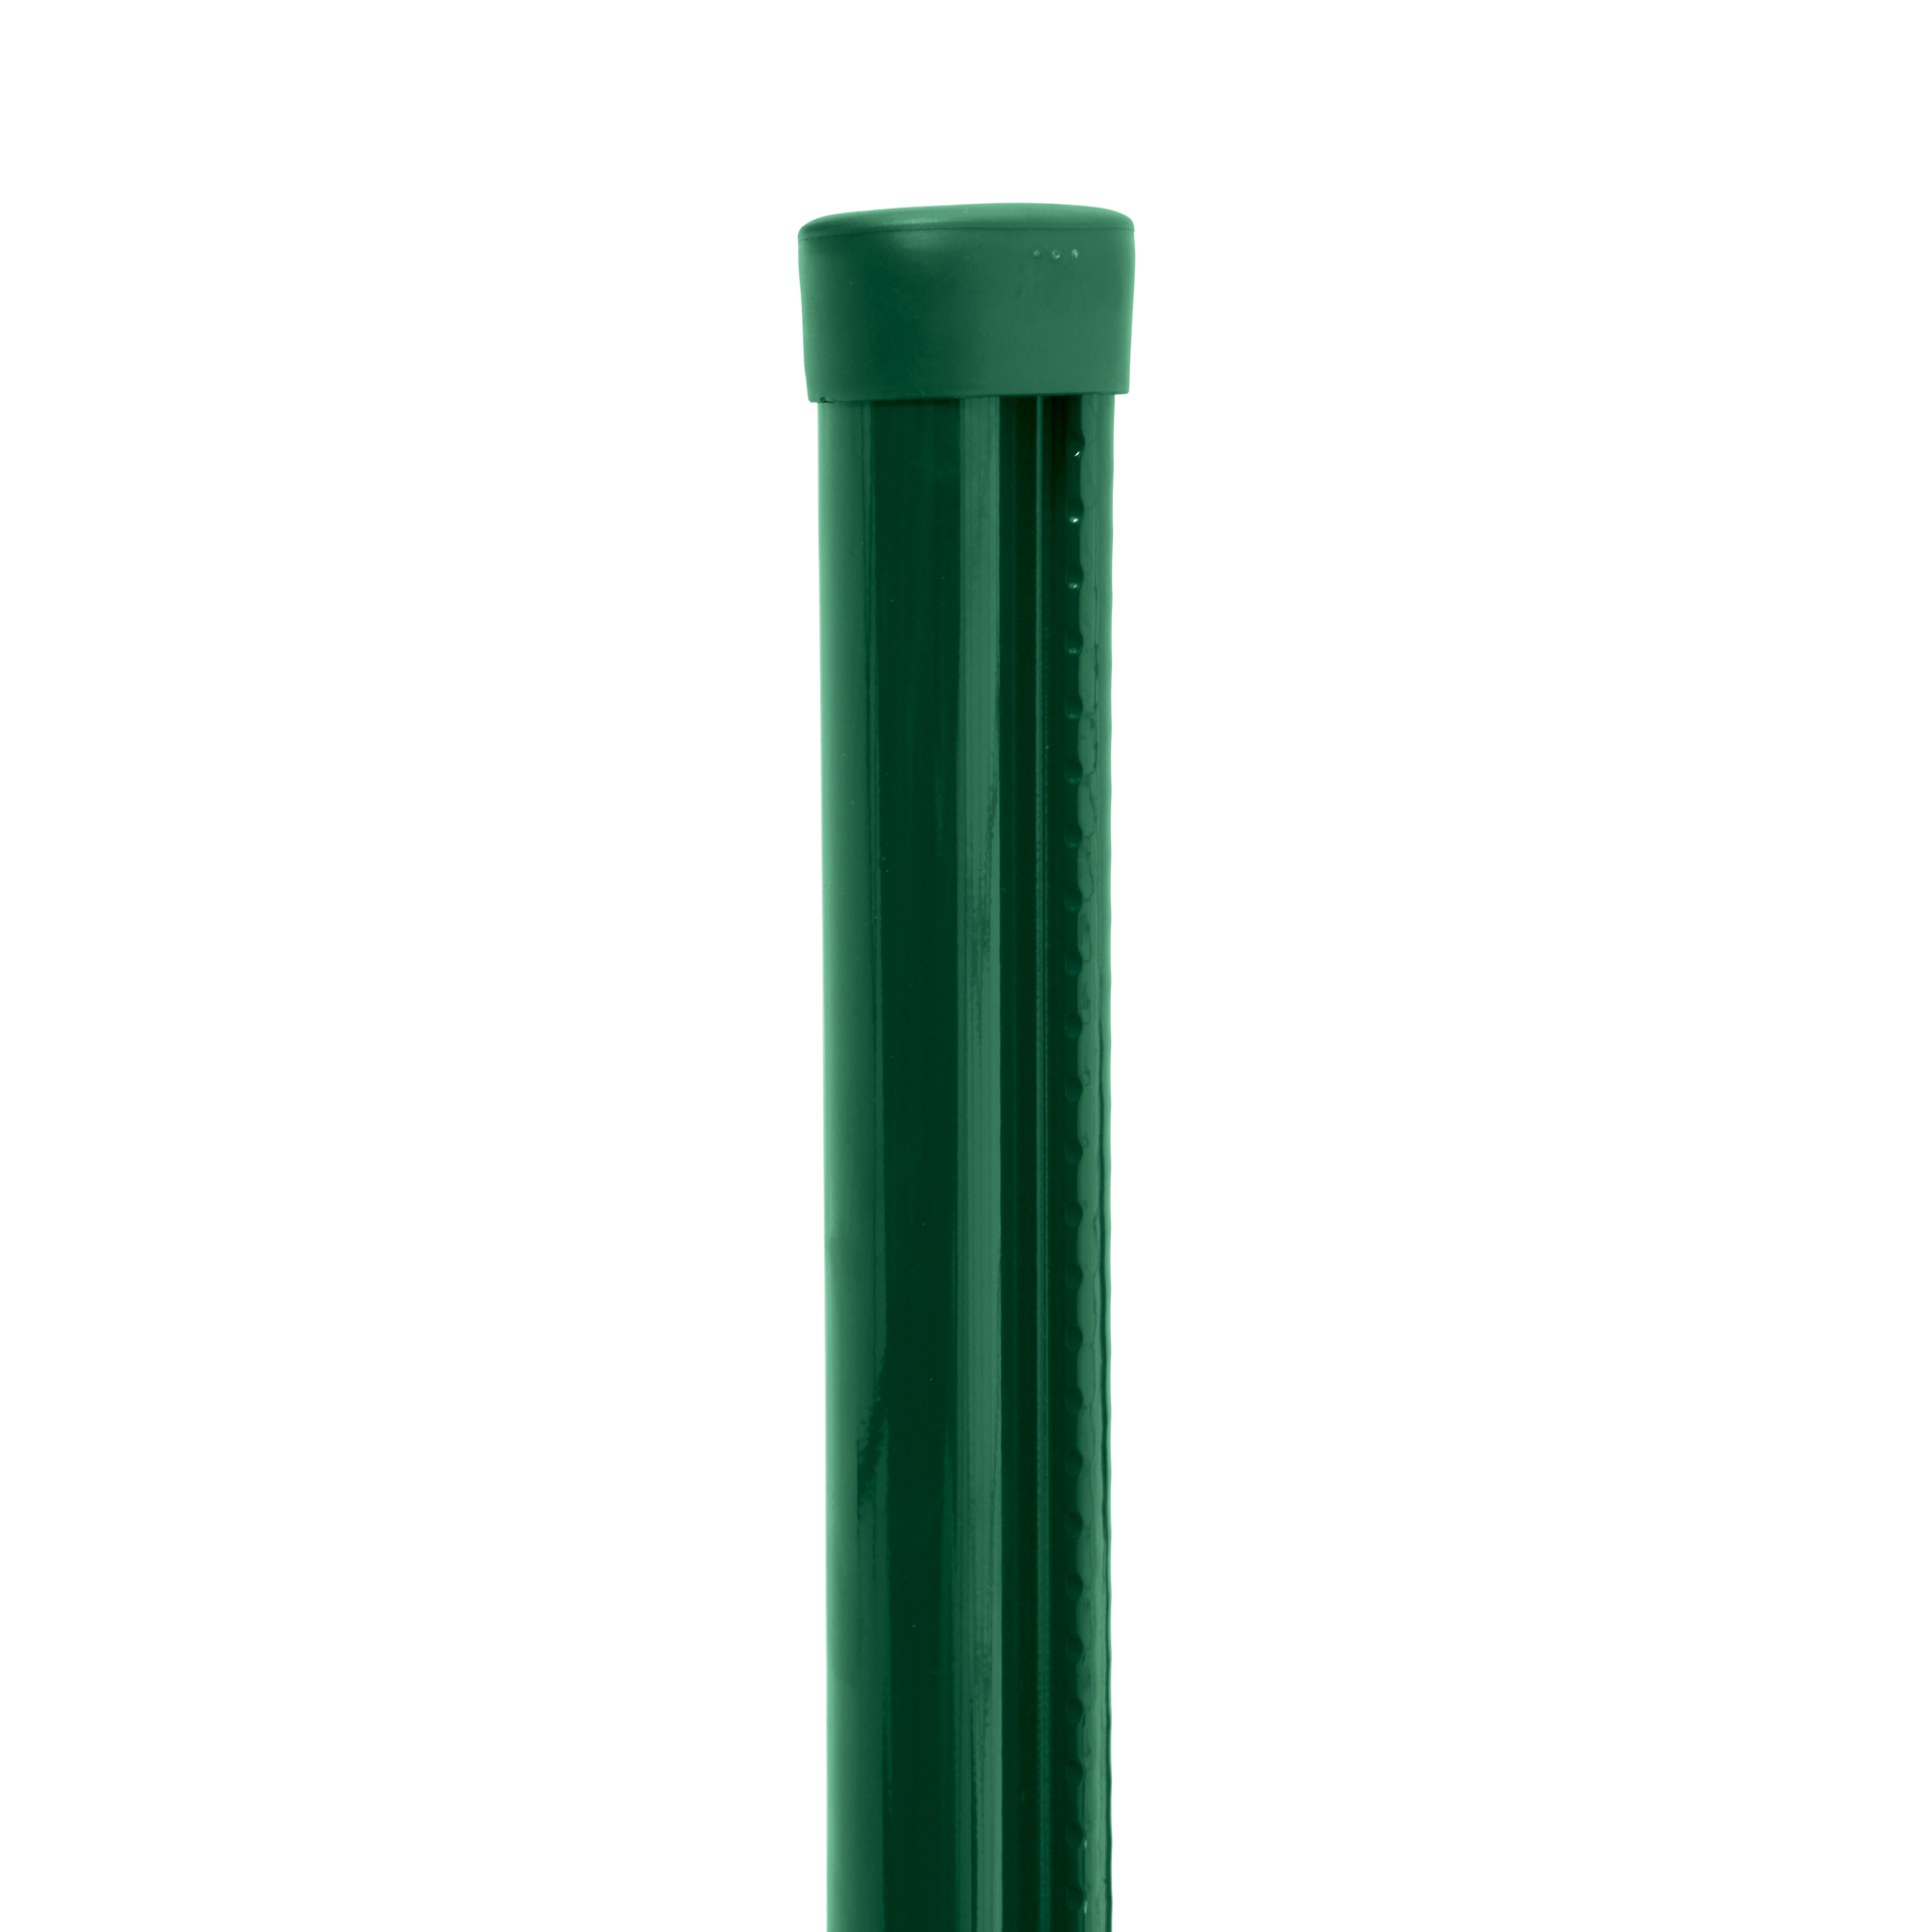 Sloupek kulatý s montážnílištou Pilclip Zn + PVC zelený průměr 48 mm výška 1